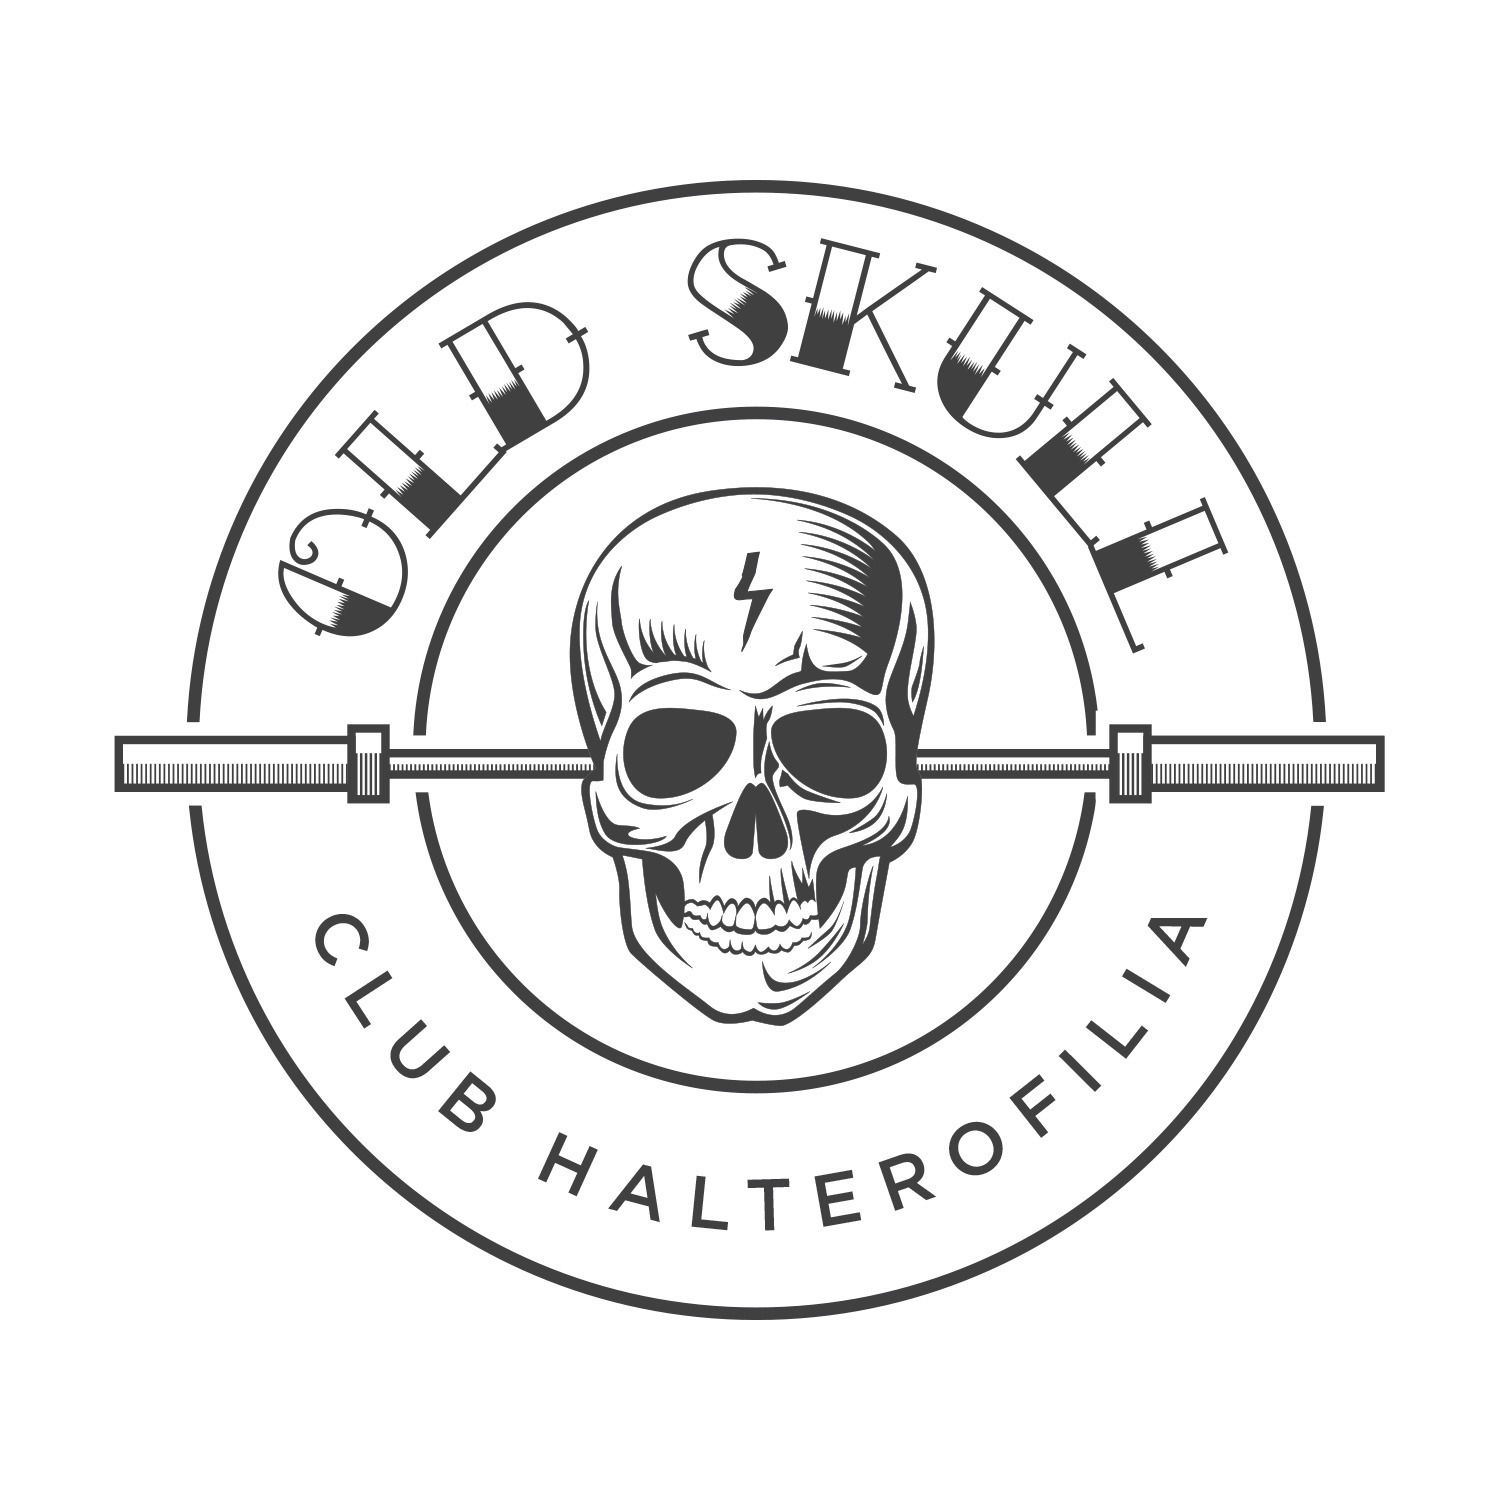 CLUB HALTEROFILIA OLD SKULL